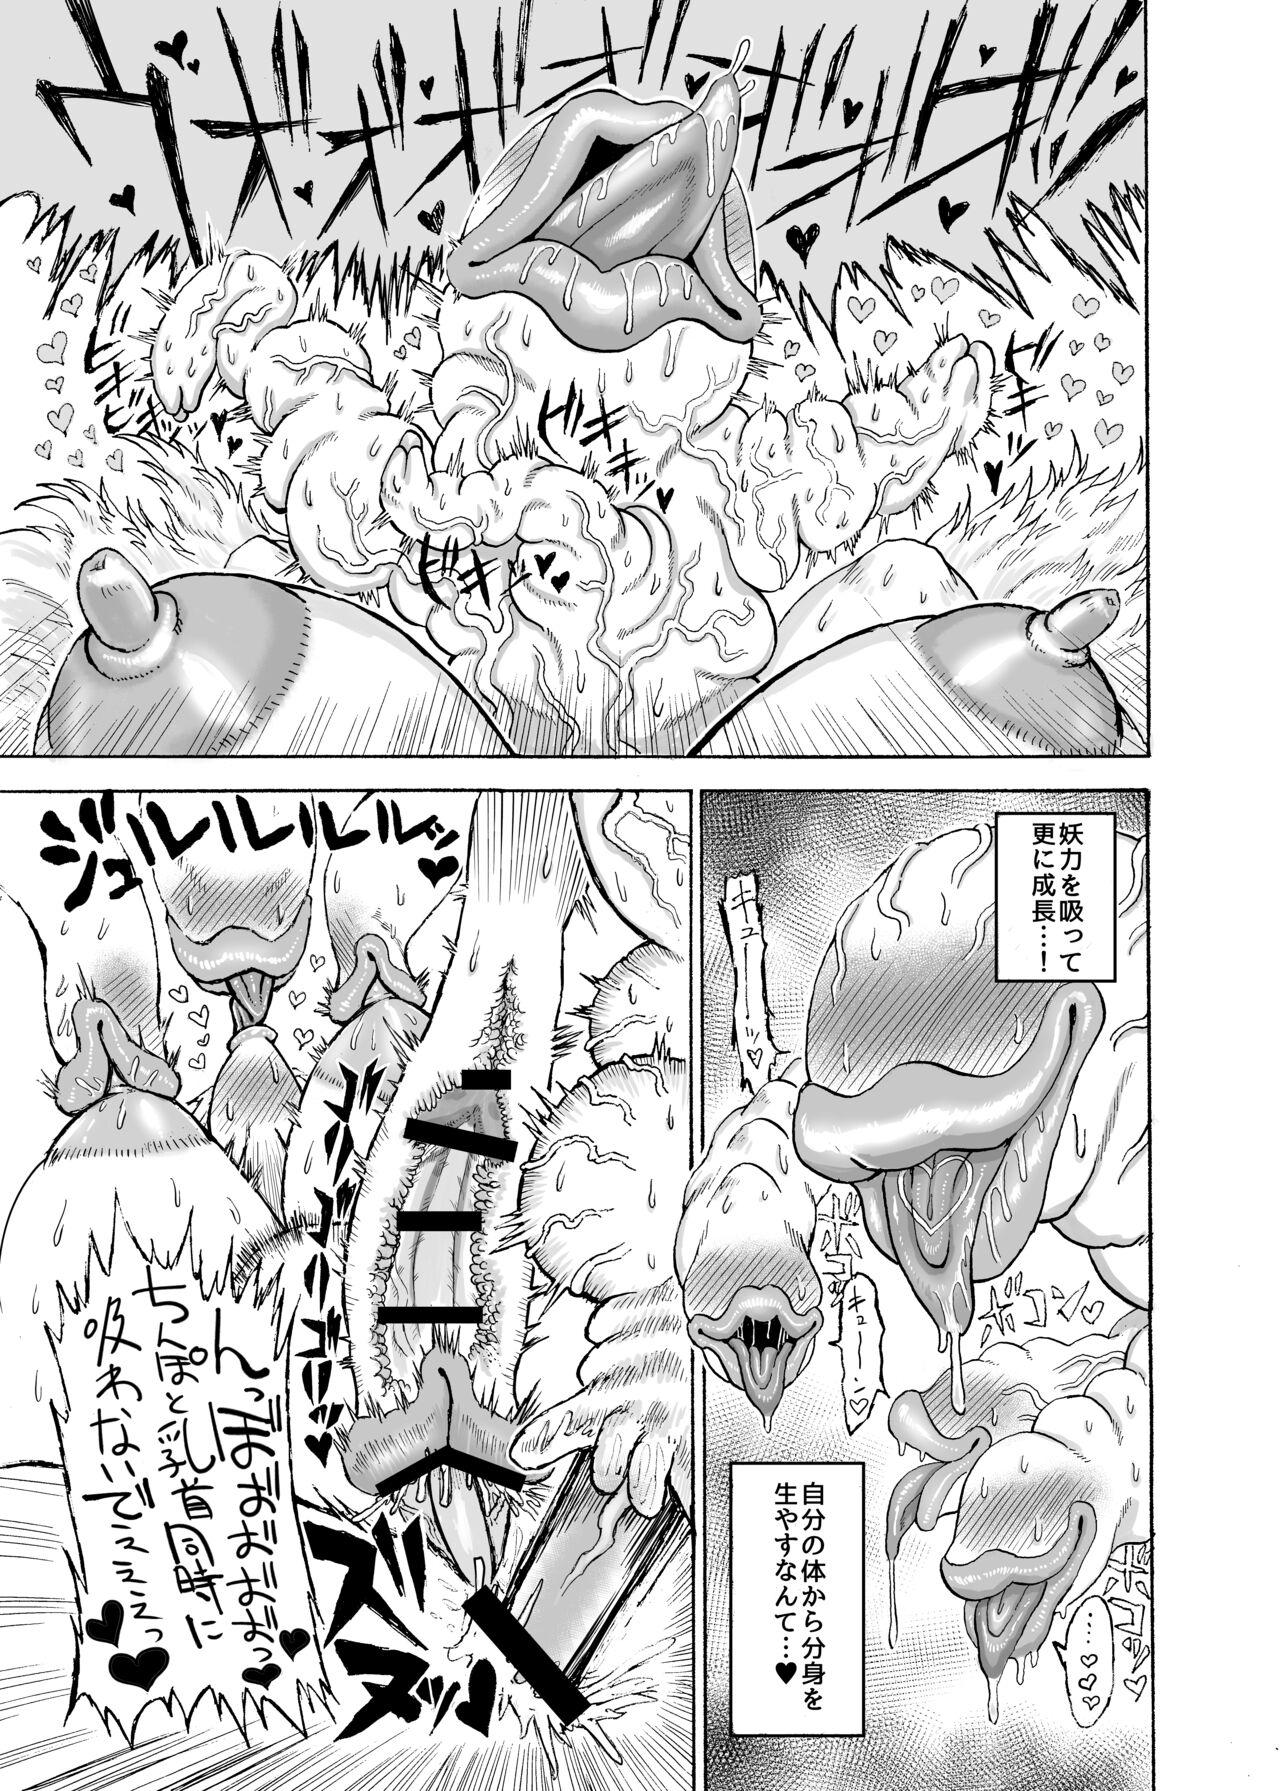 Yakumo Ran VS Semen sucking worm 19